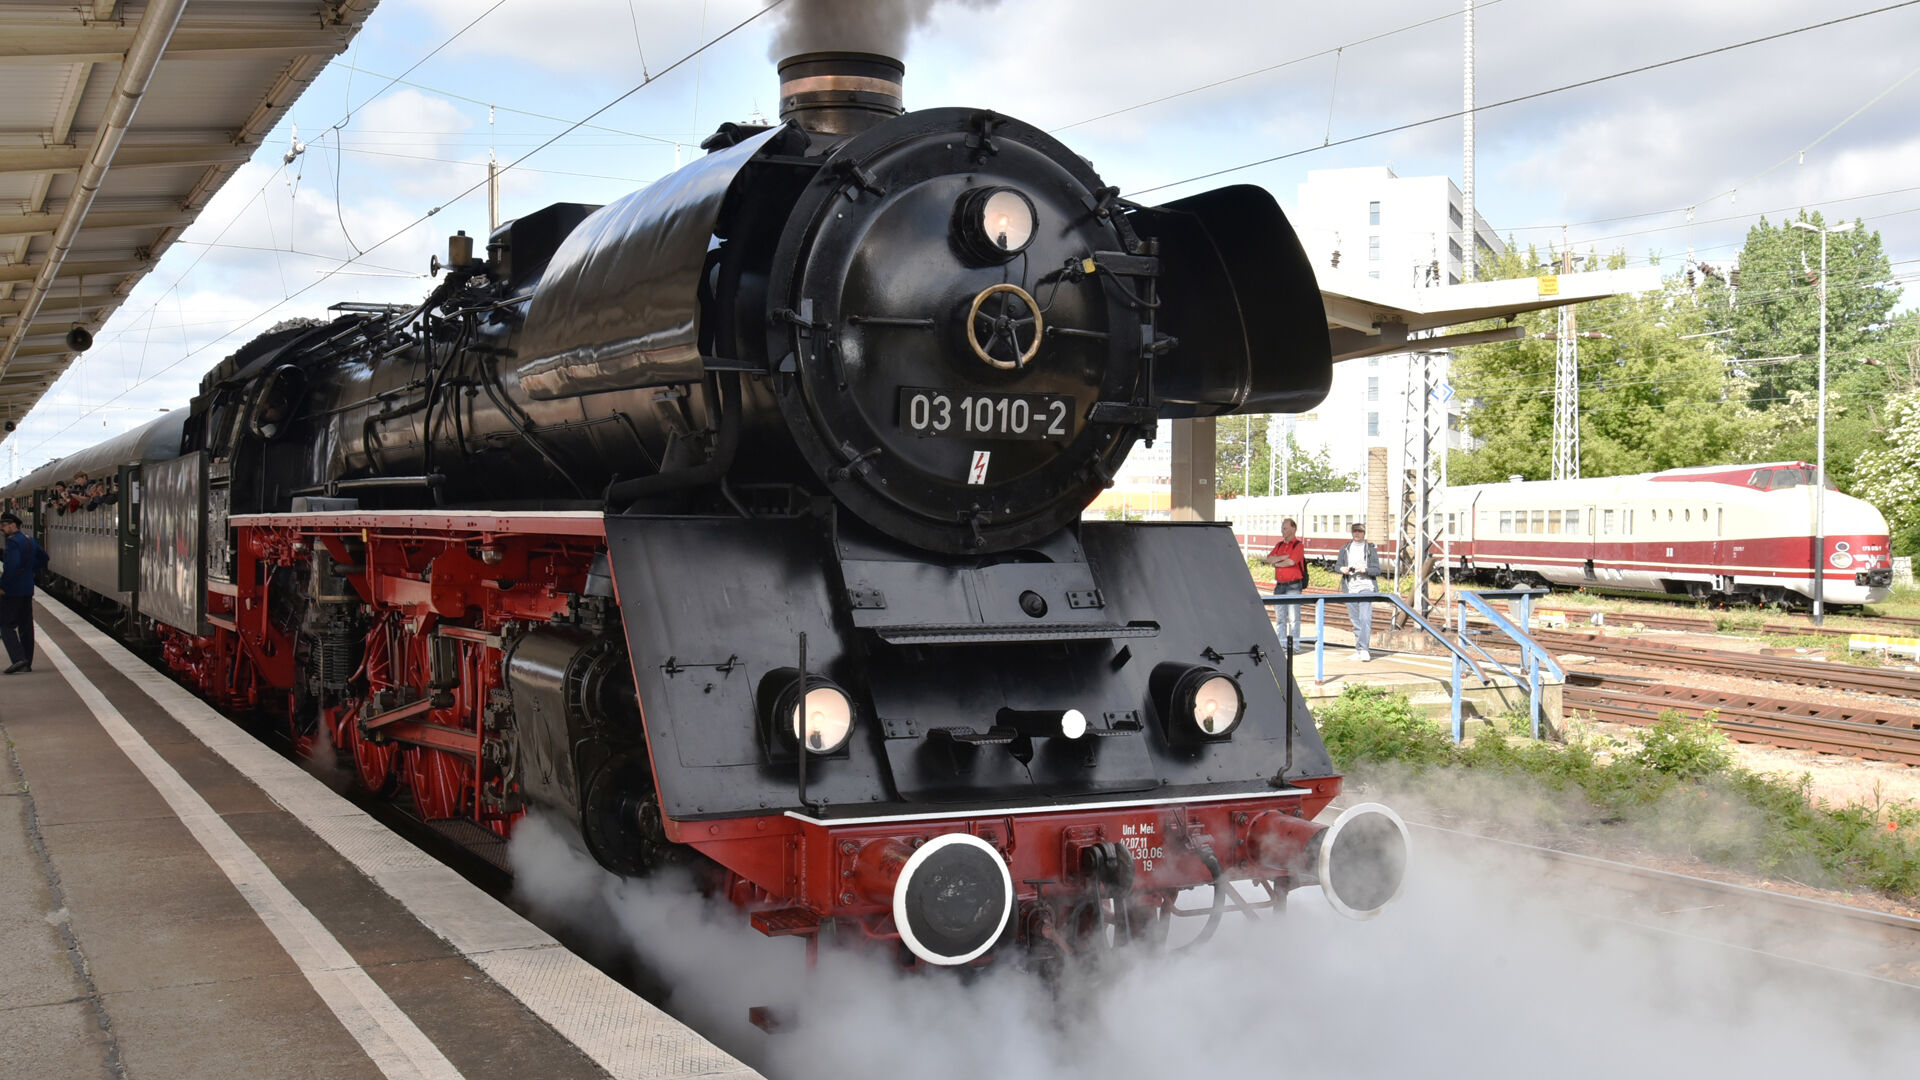 Dampfsonderzug von Nostalgiezugreisen Lipsia e.V. 
© Dirk Voigt